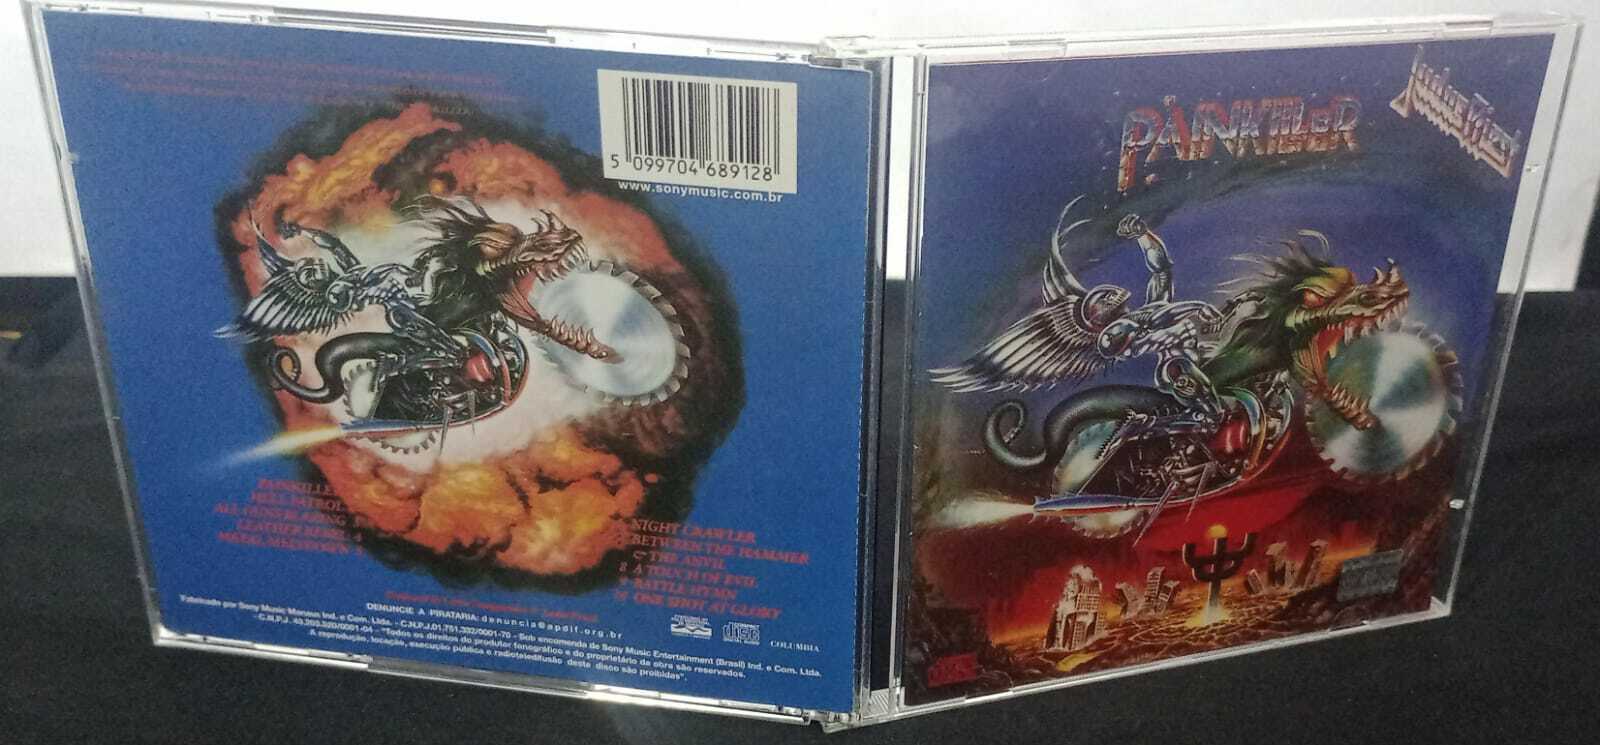 CD - Judas Priest - Painkiller